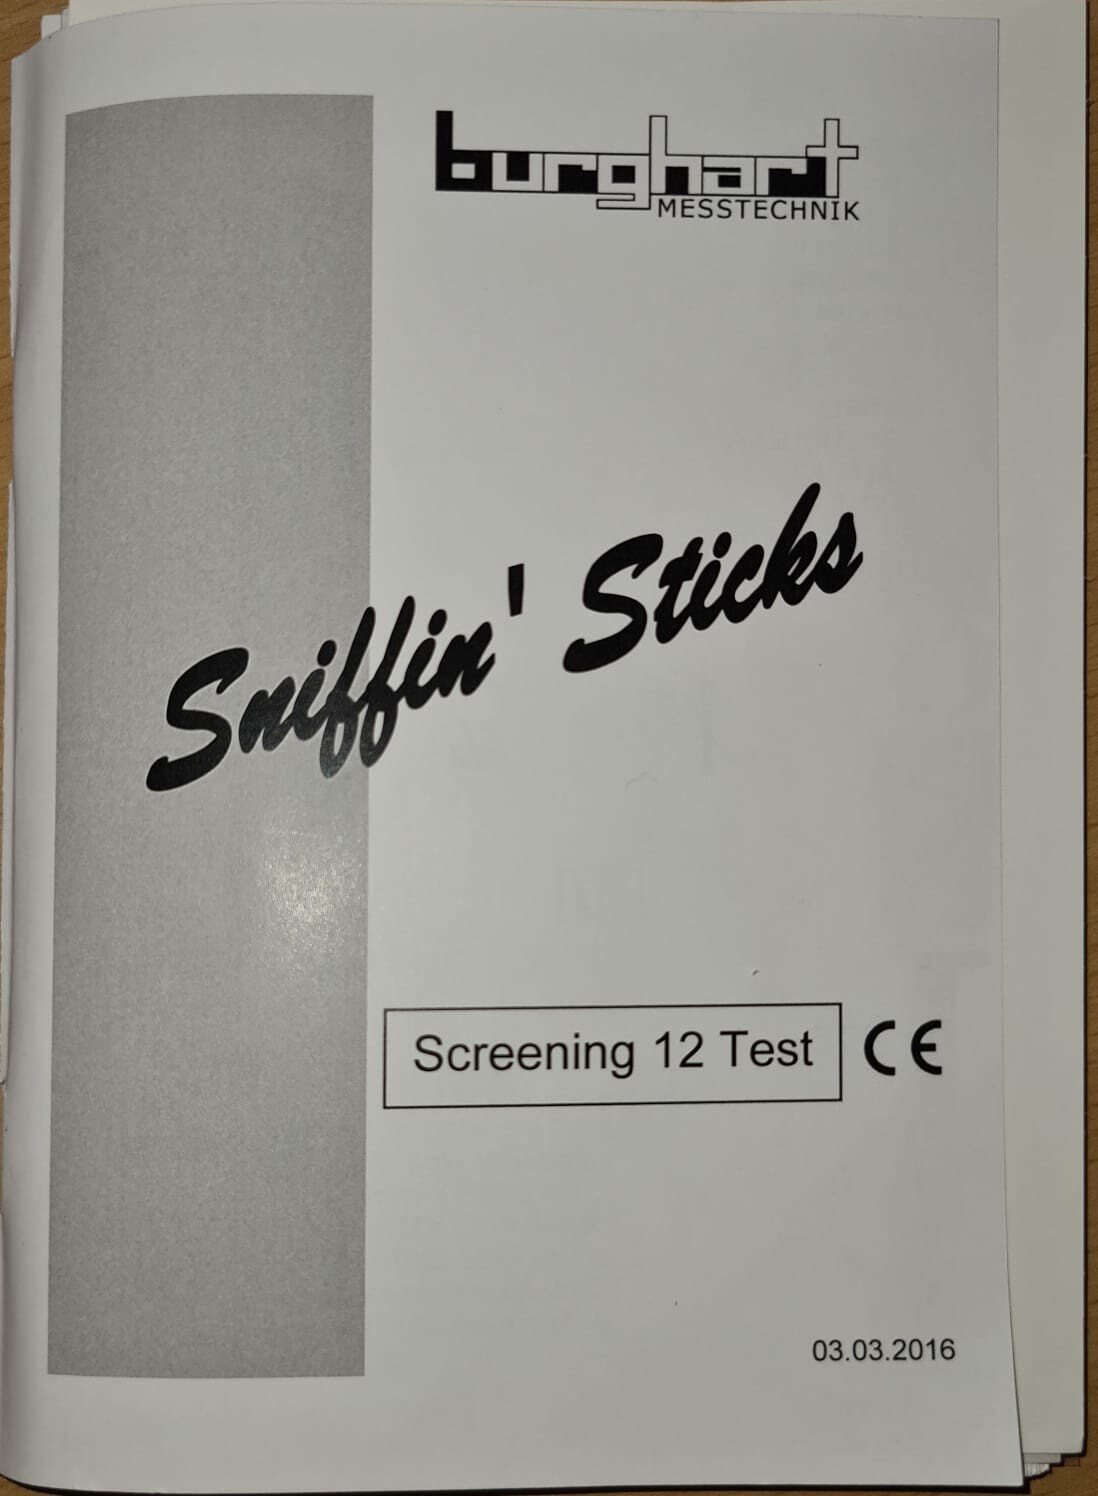 Sniffin' Sticks (Krankenhausmuseum Bielefeld e.V. CC BY-NC-SA)